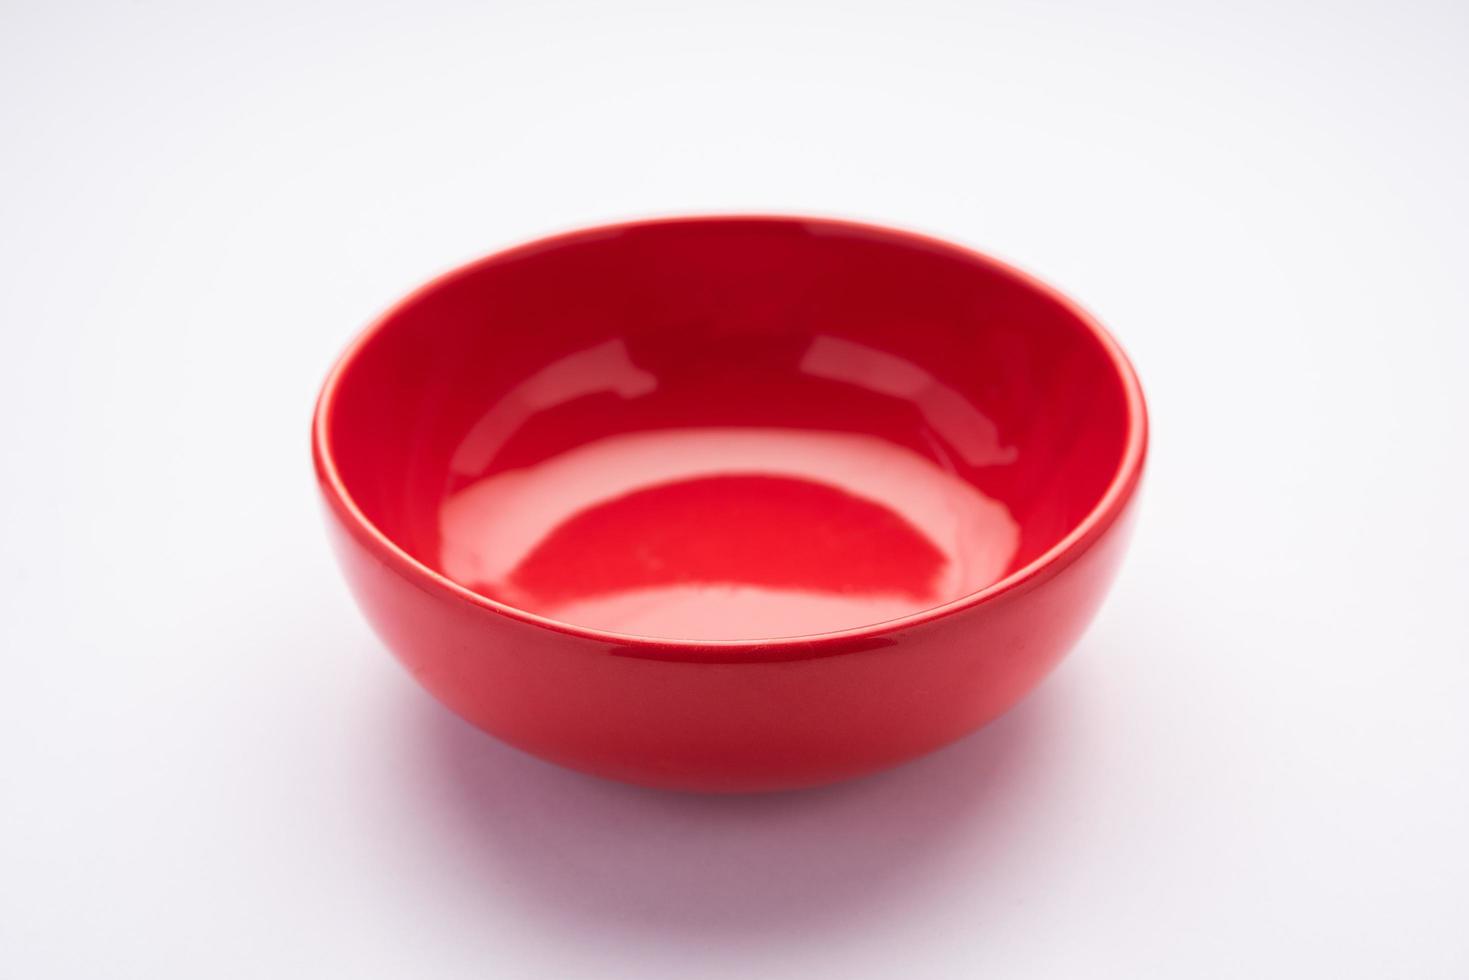 tigela ou recipiente de cerâmica vermelha vazia foto